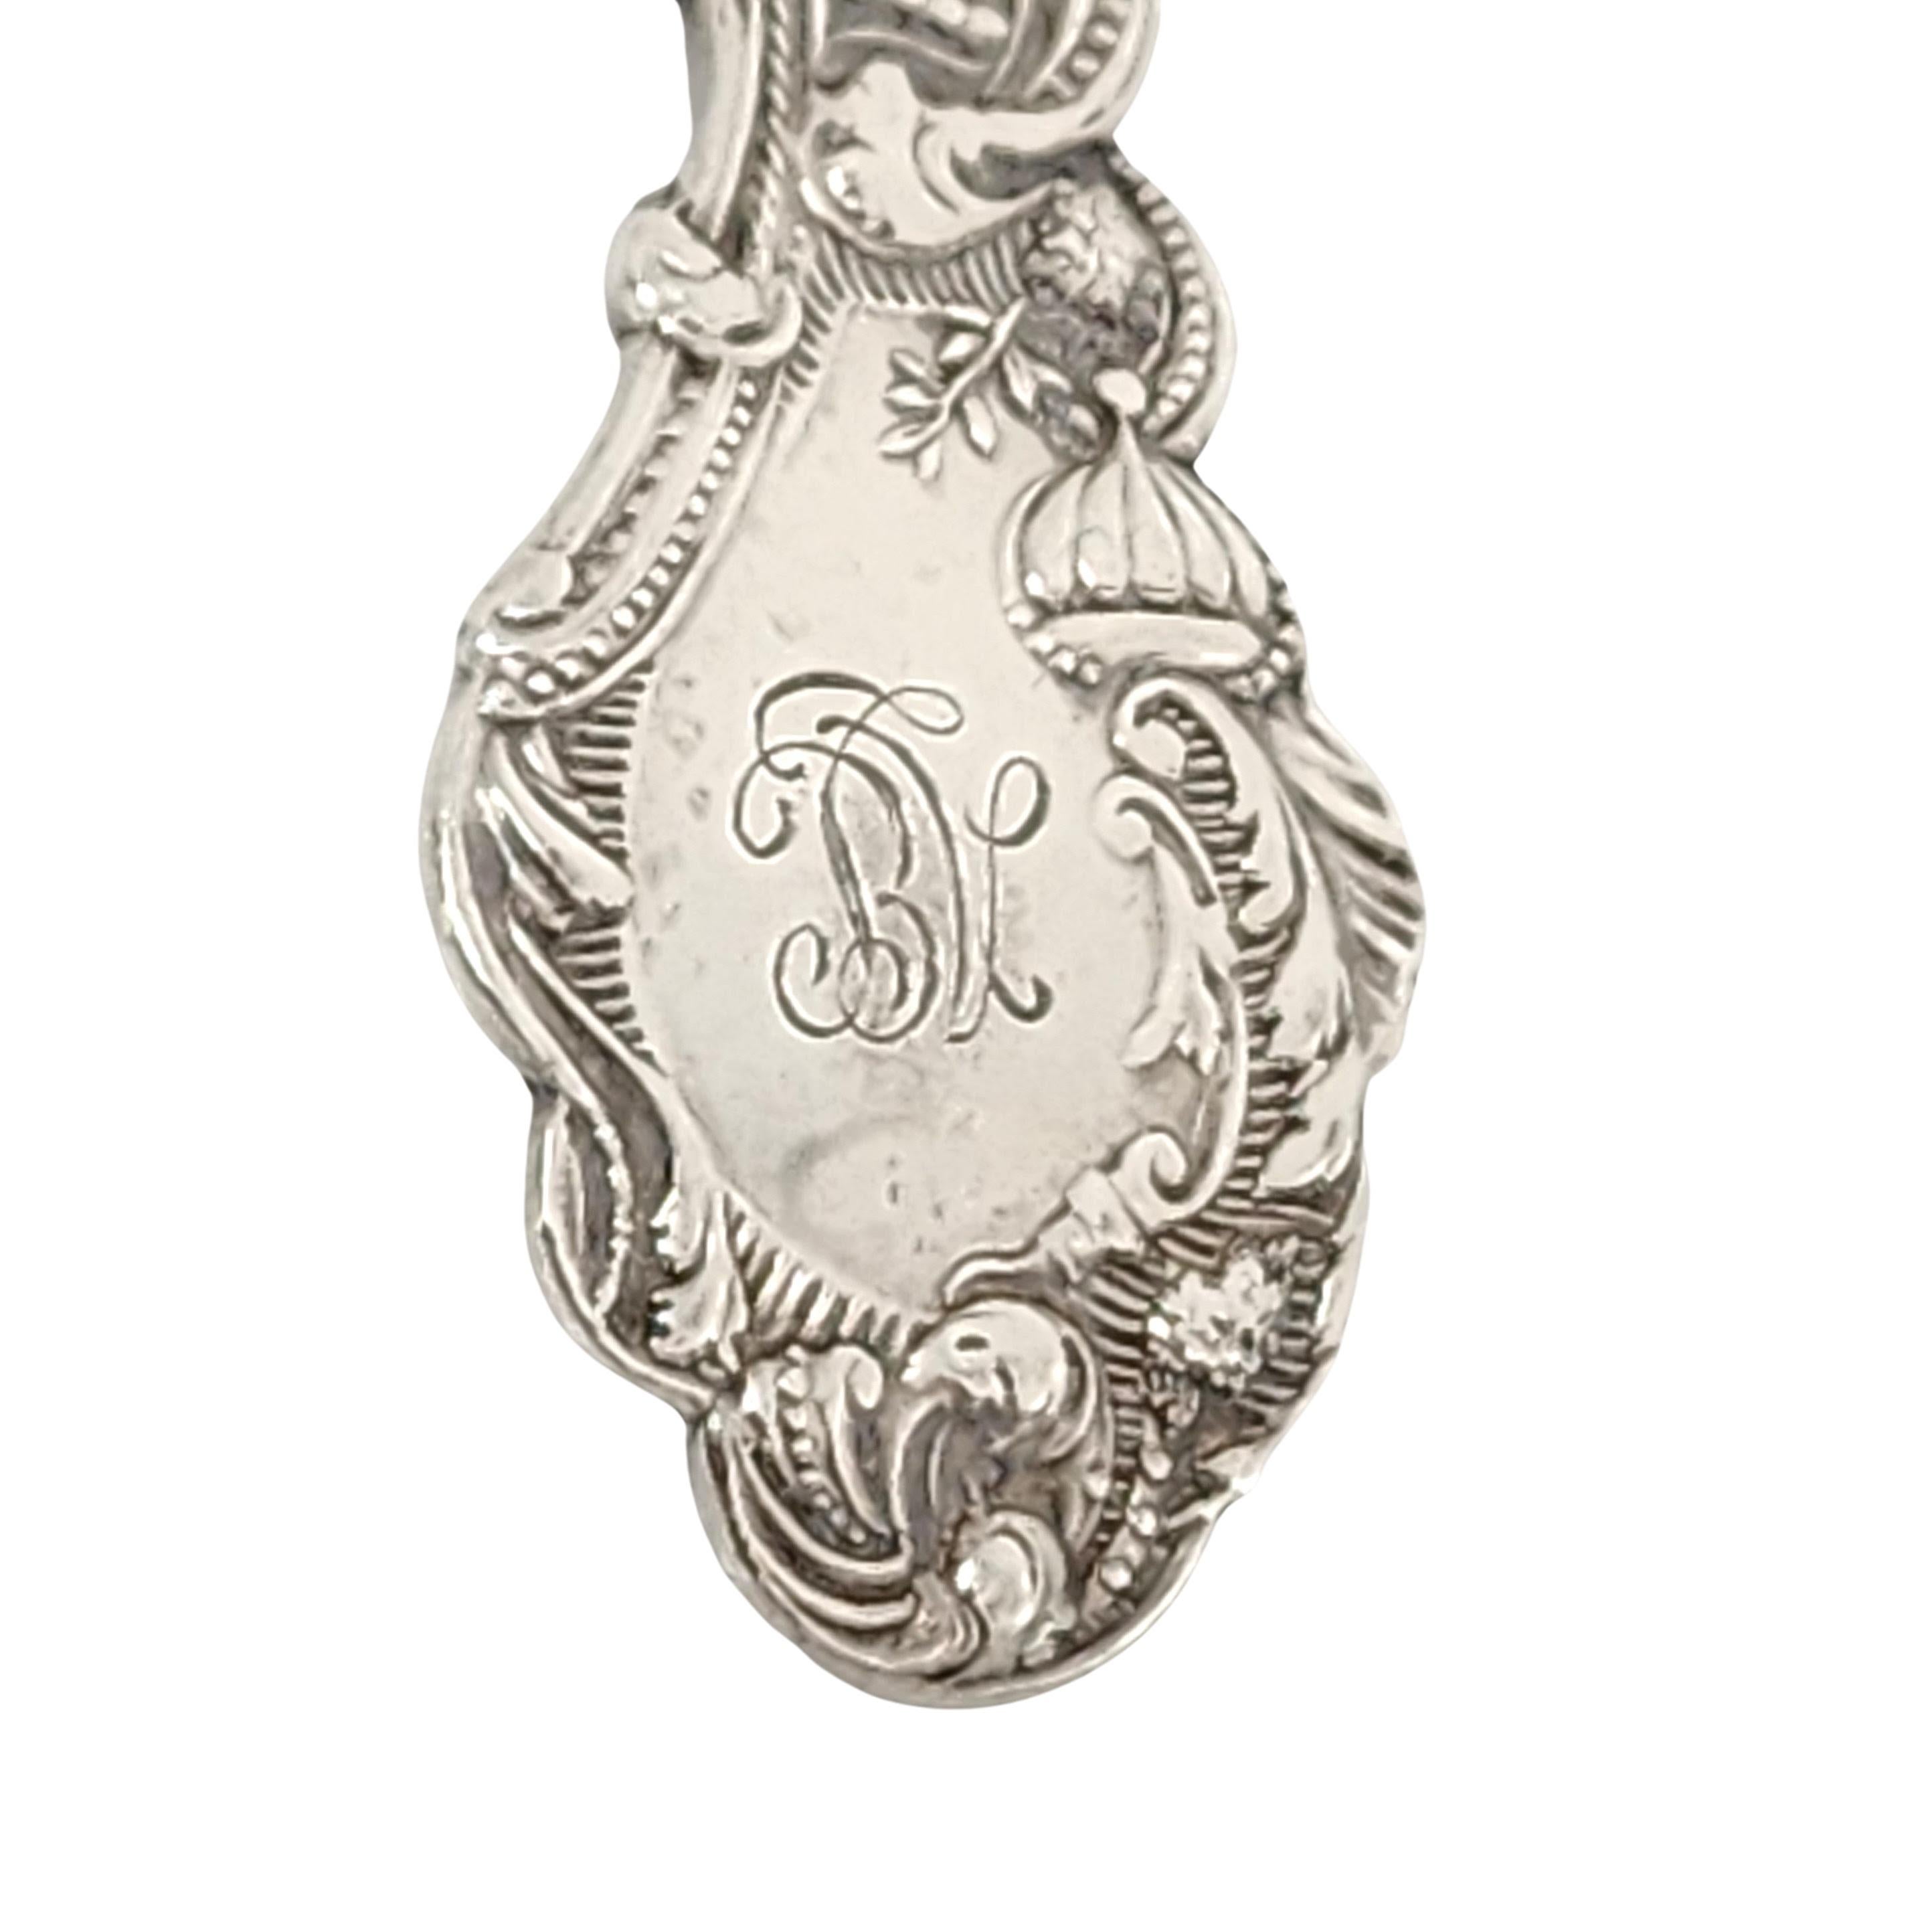 Cuillère de lavage en argent sterling doré cuillère de Gorham dans le motif Versailles avec un monogramme.

Le monogramme semble être BV au dos de la poignée.

Gorham's Versailles est un motif à multiples facettes conçu par Antoine Heller en 1885.